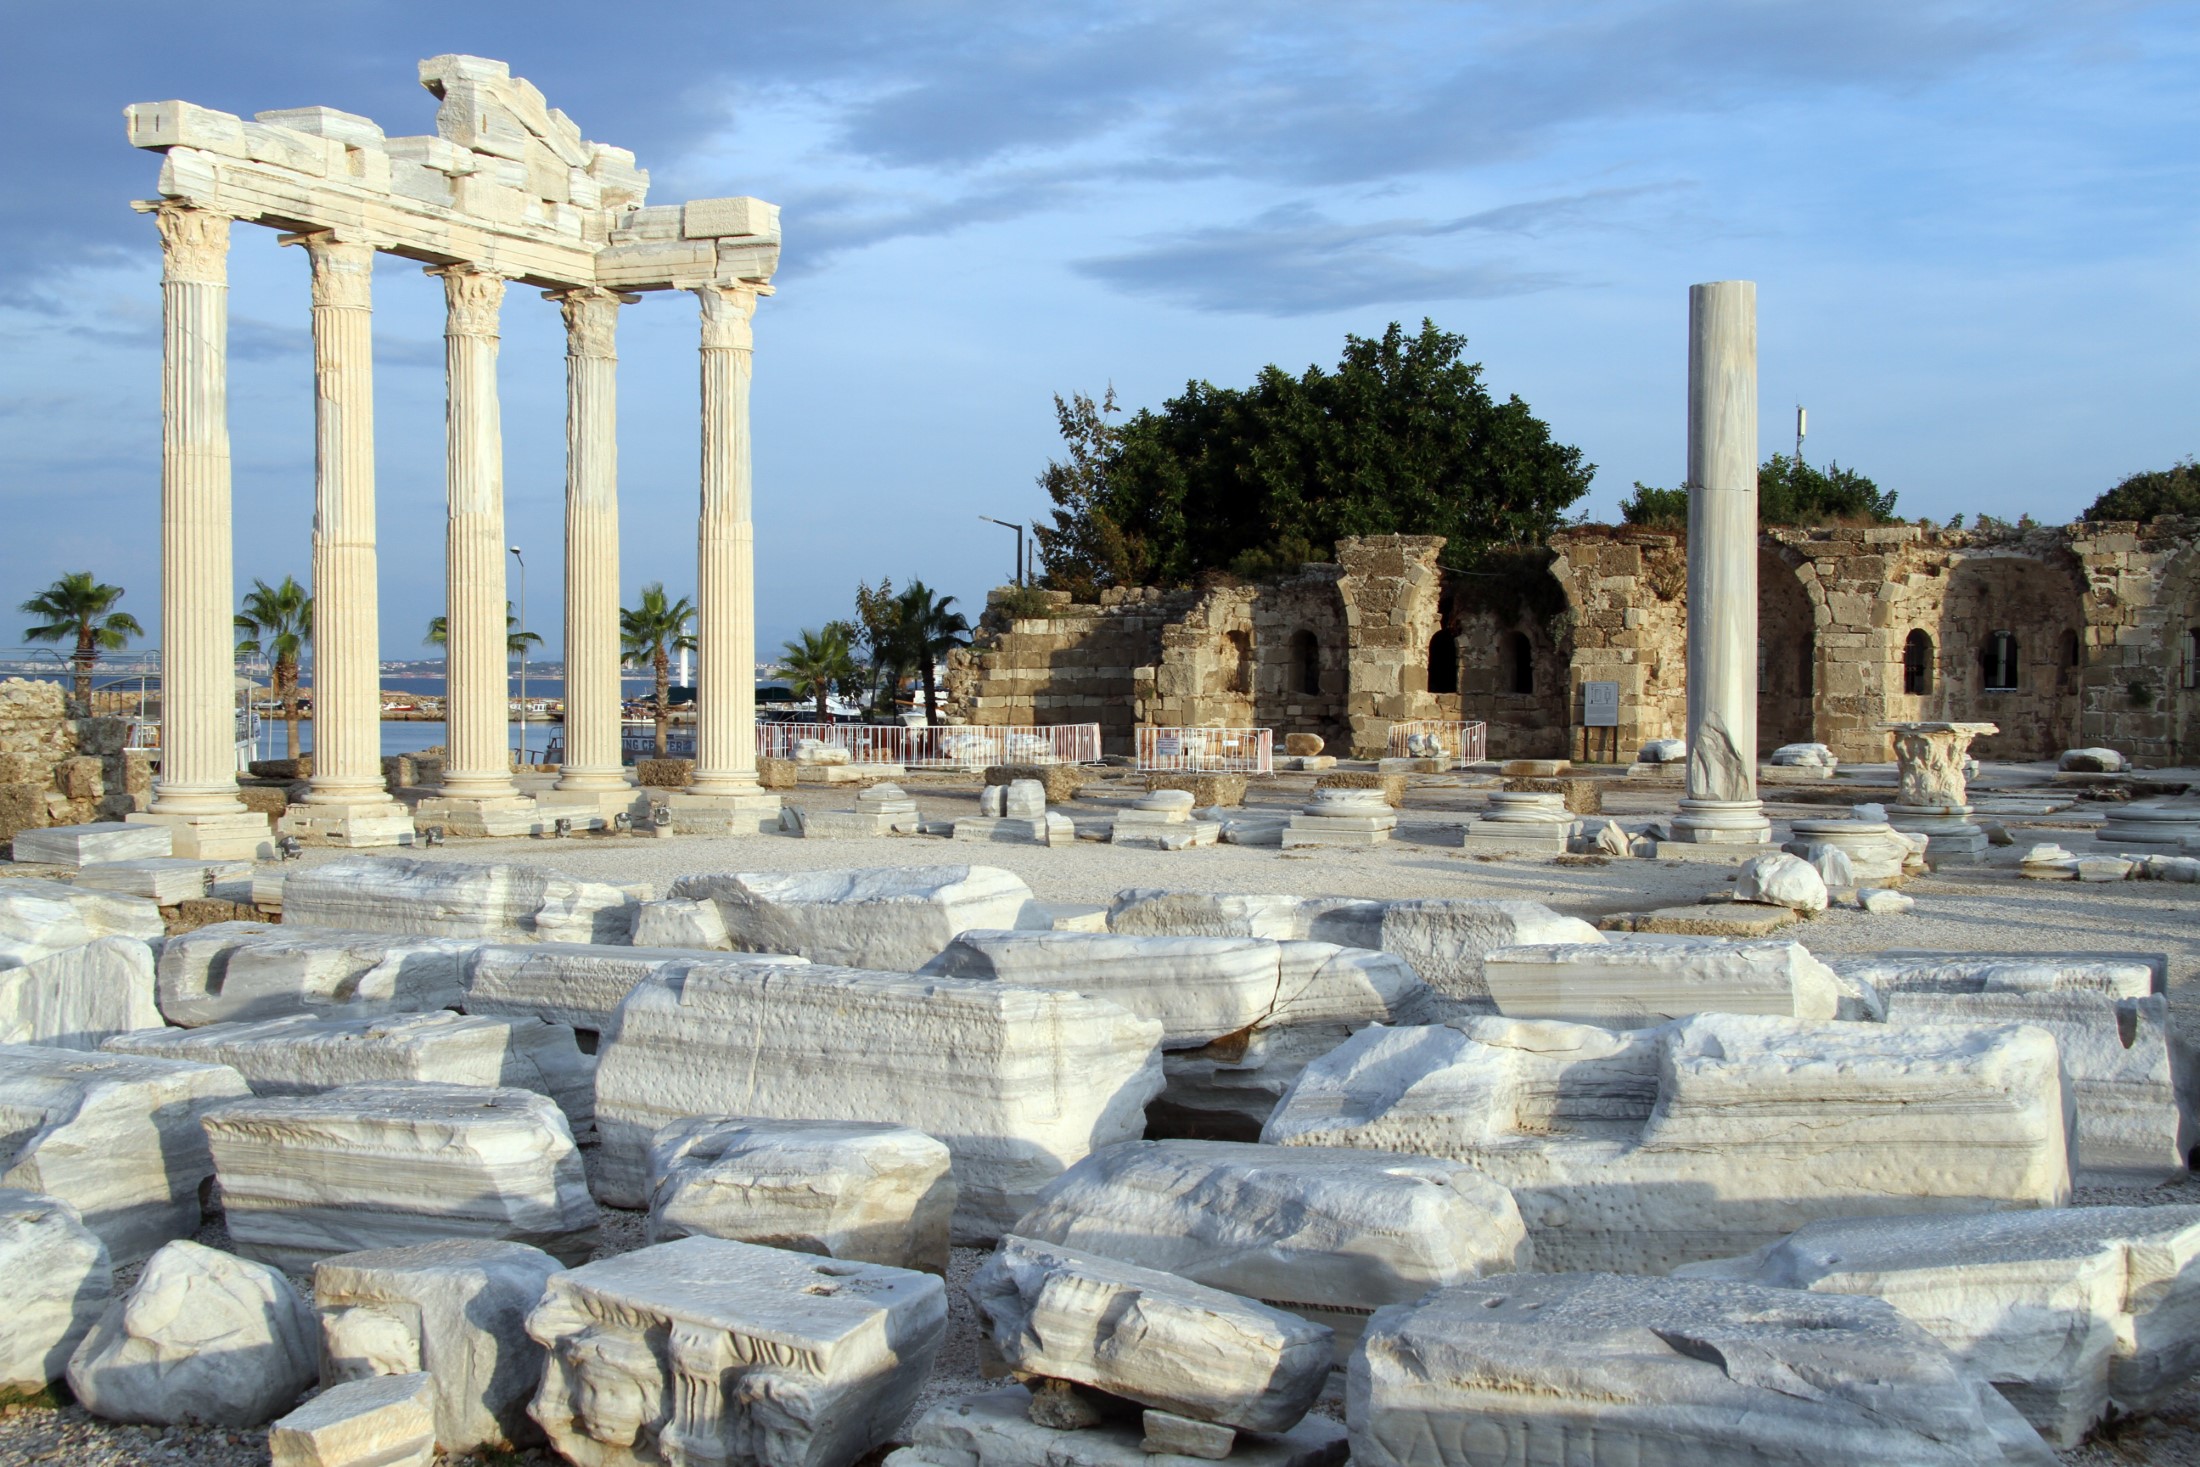 Ruins of Apollo temple in Side, Turkey